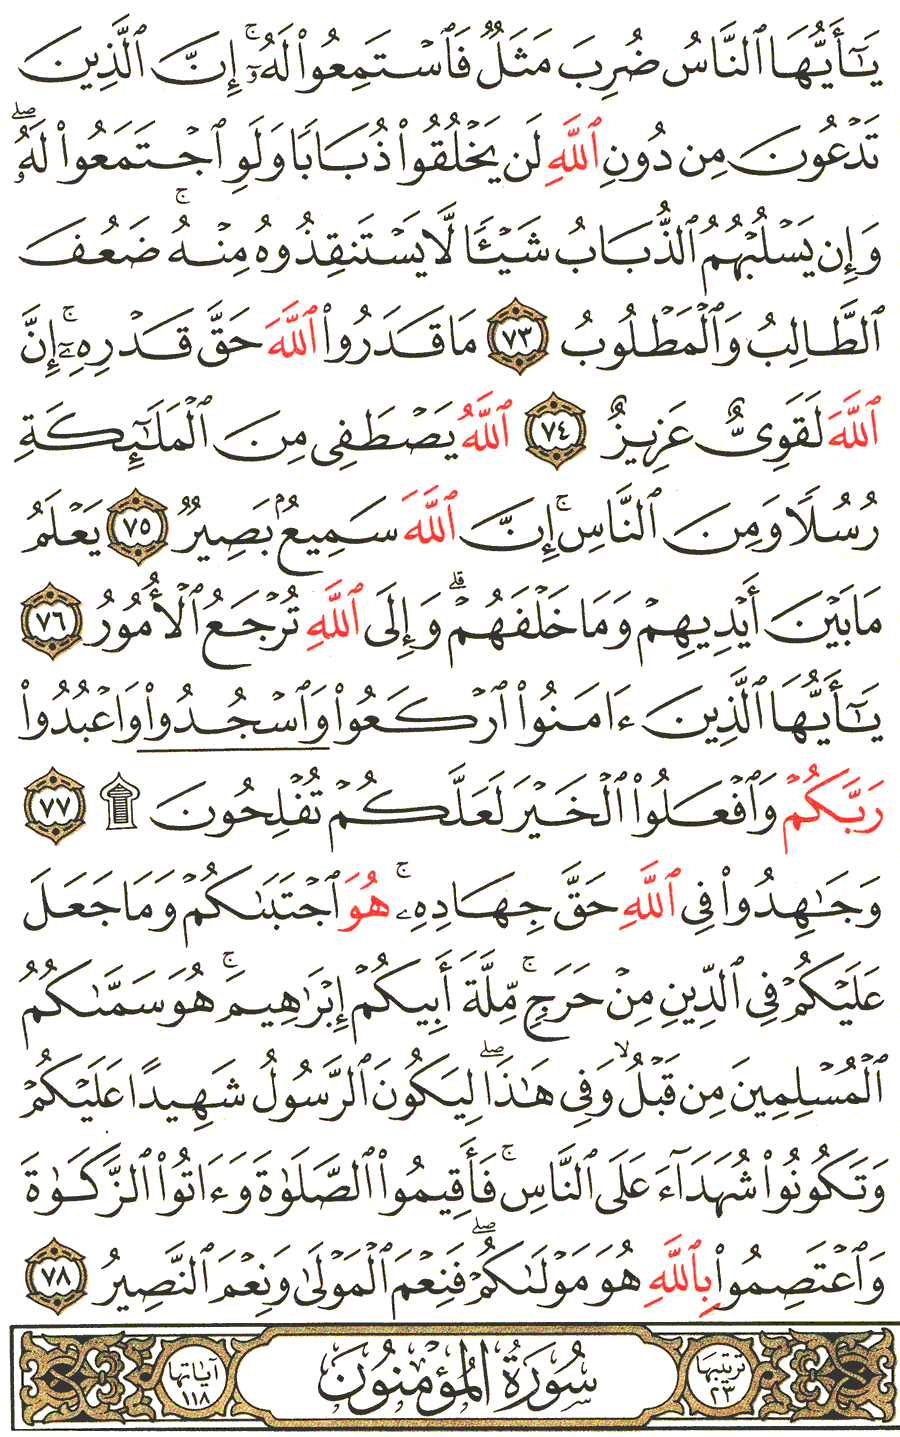 الصفحة رقم 341  من القرآن الكريم مكتوبة من المصحف